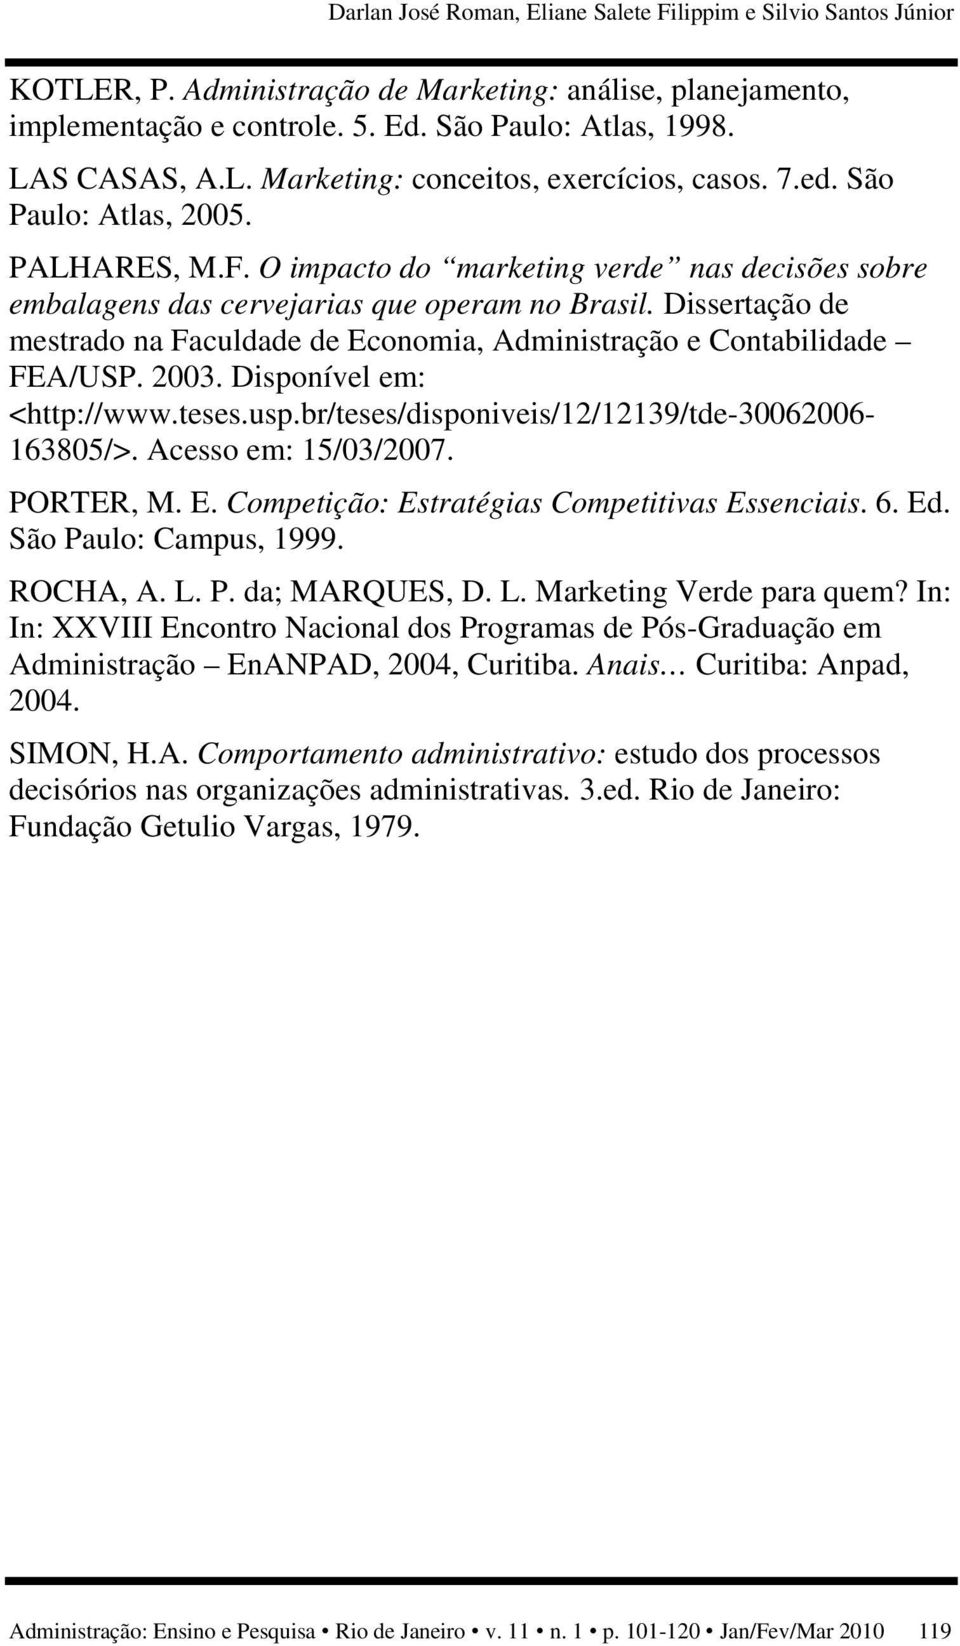 Dissertação de mestrado na Faculdade de Economia, Administração e Contabilidade FEA/USP. 2003. Disponível em: <http://www.teses.usp.br/teses/disponiveis/12/12139/tde-30062006-163805/>.